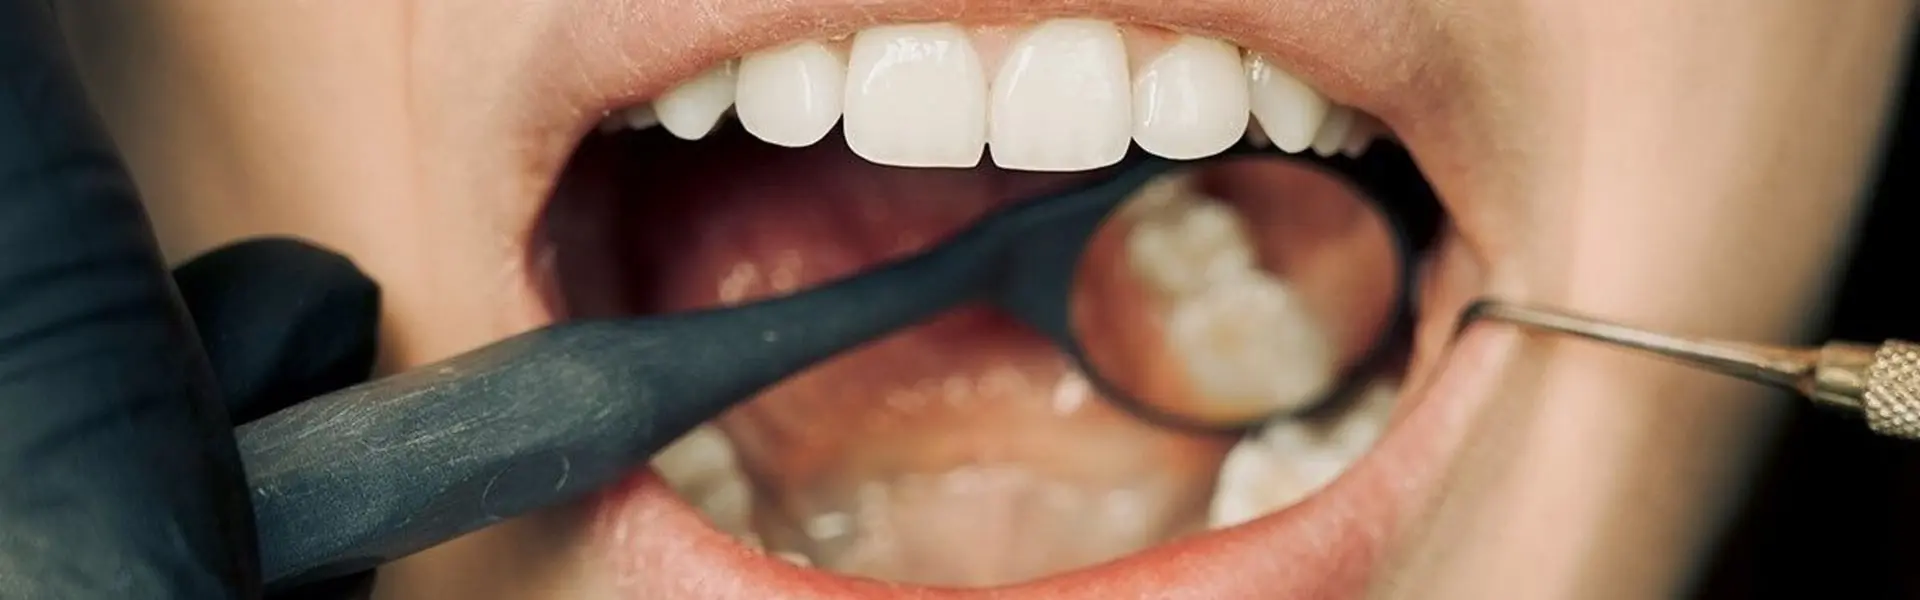 Болит мертвый зуб: что делать? - «Стоматология на Марата 31»